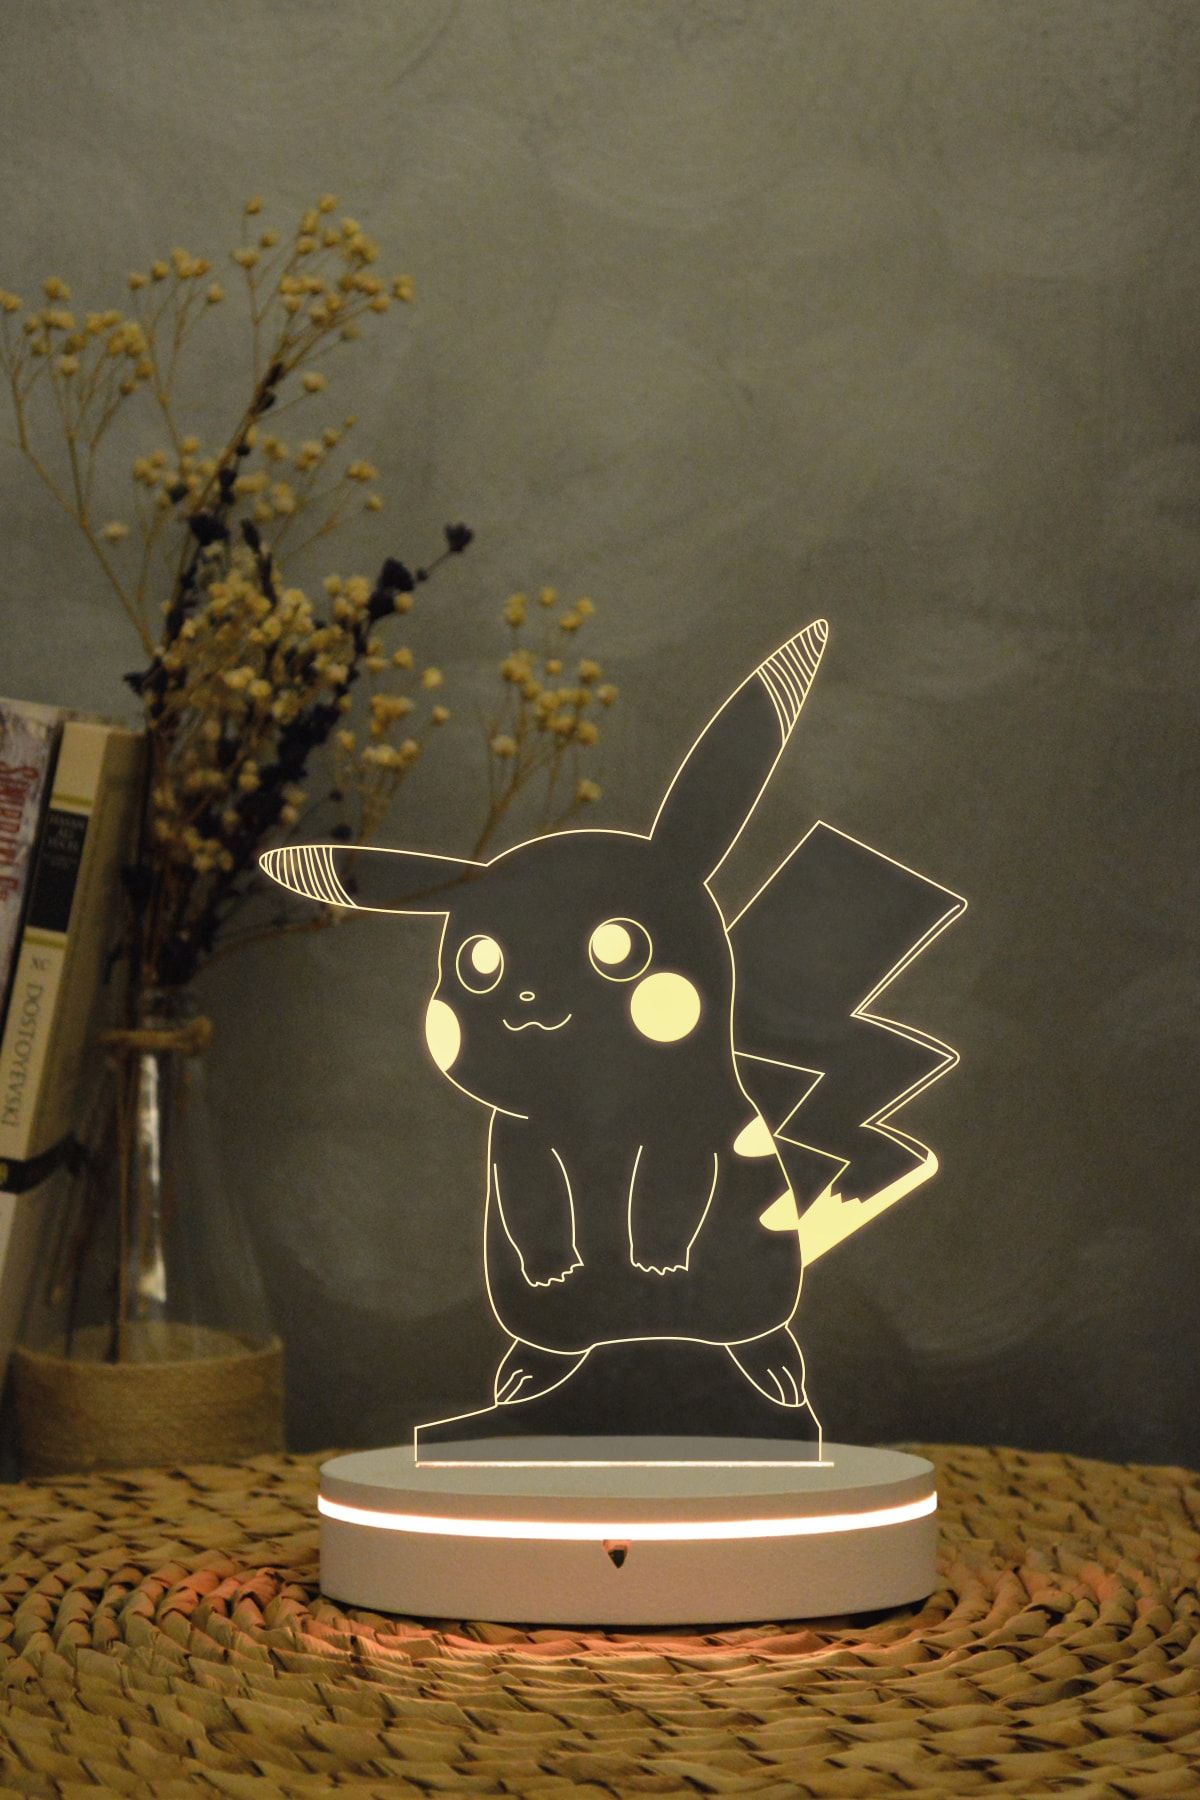 Yubi Design Pikachu , Pokemon - 3 Boyutlu 16 Renk Dekoratif Gece Lambası 3d